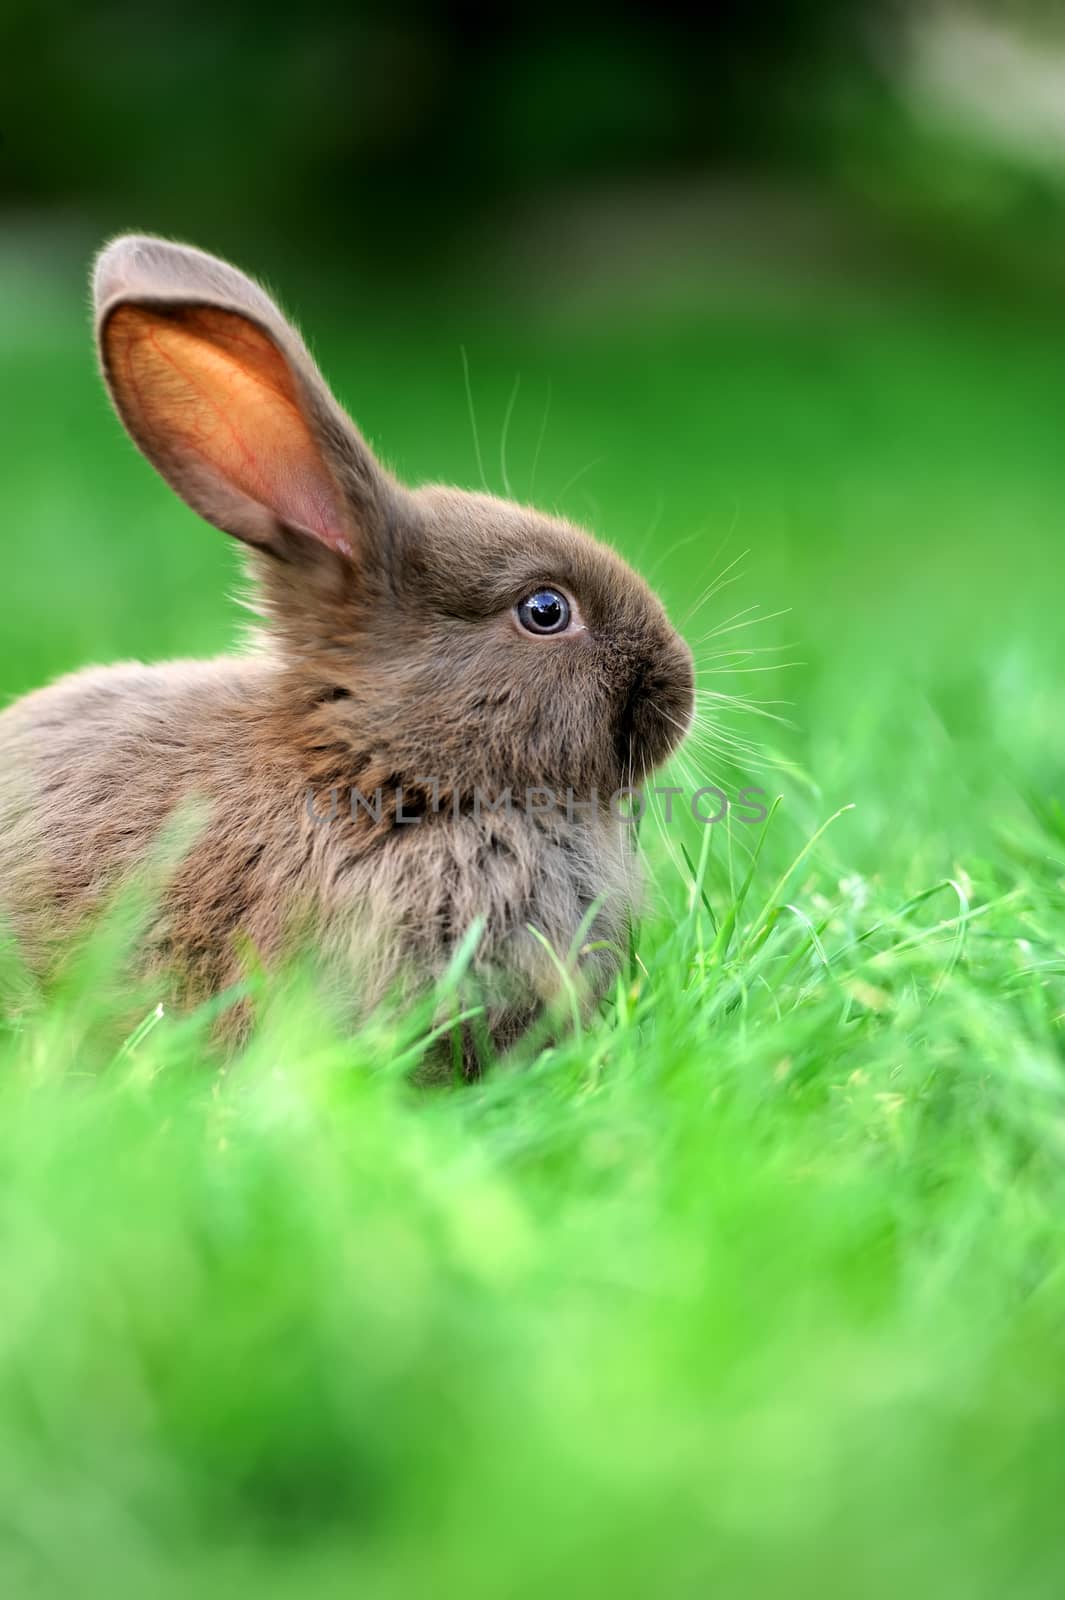 Little rabbit in grass by byrdyak